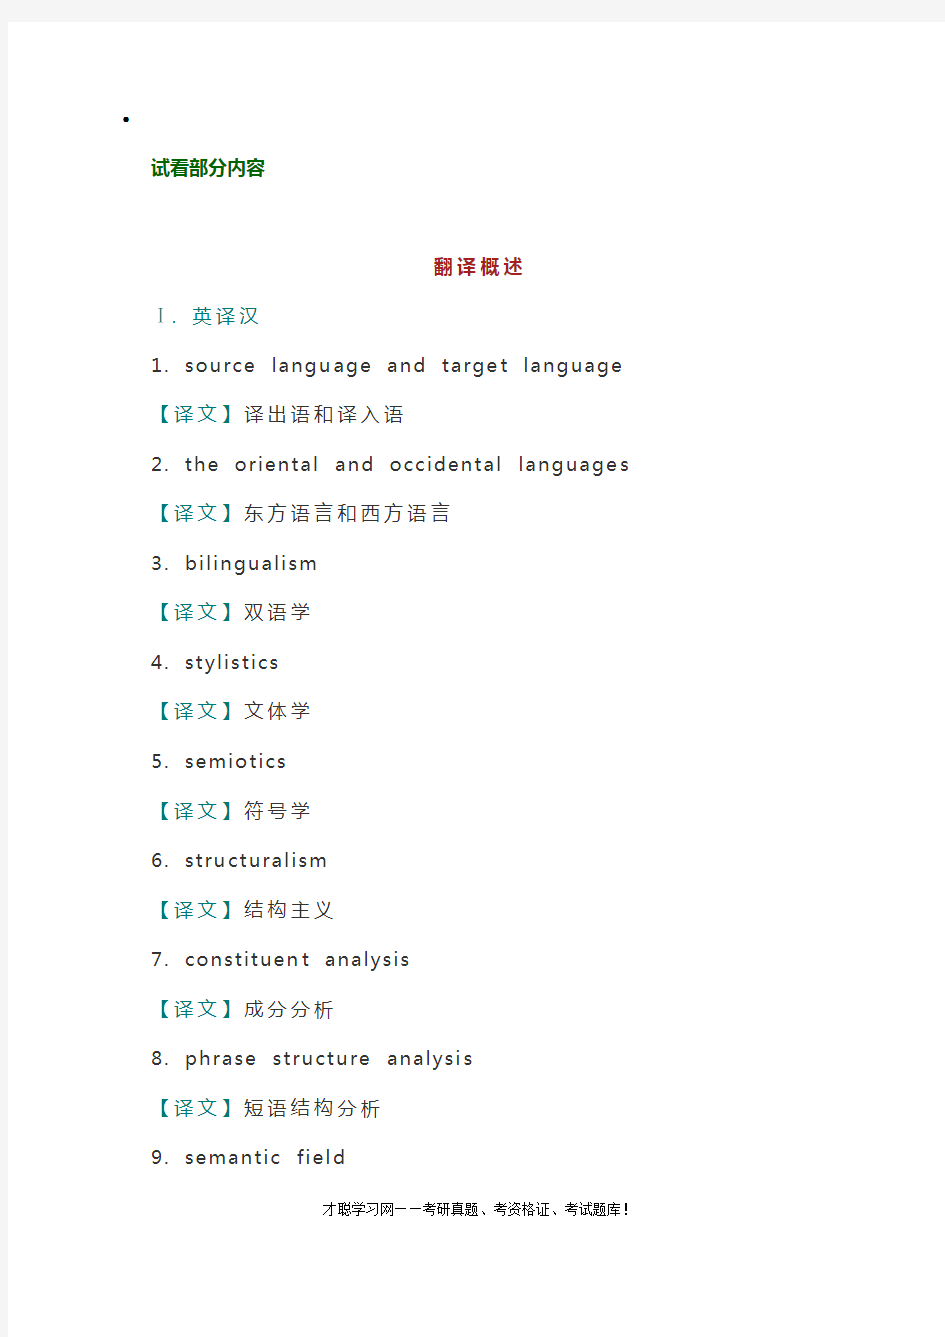 上海大学357英语翻译基础考研真题及复习笔记